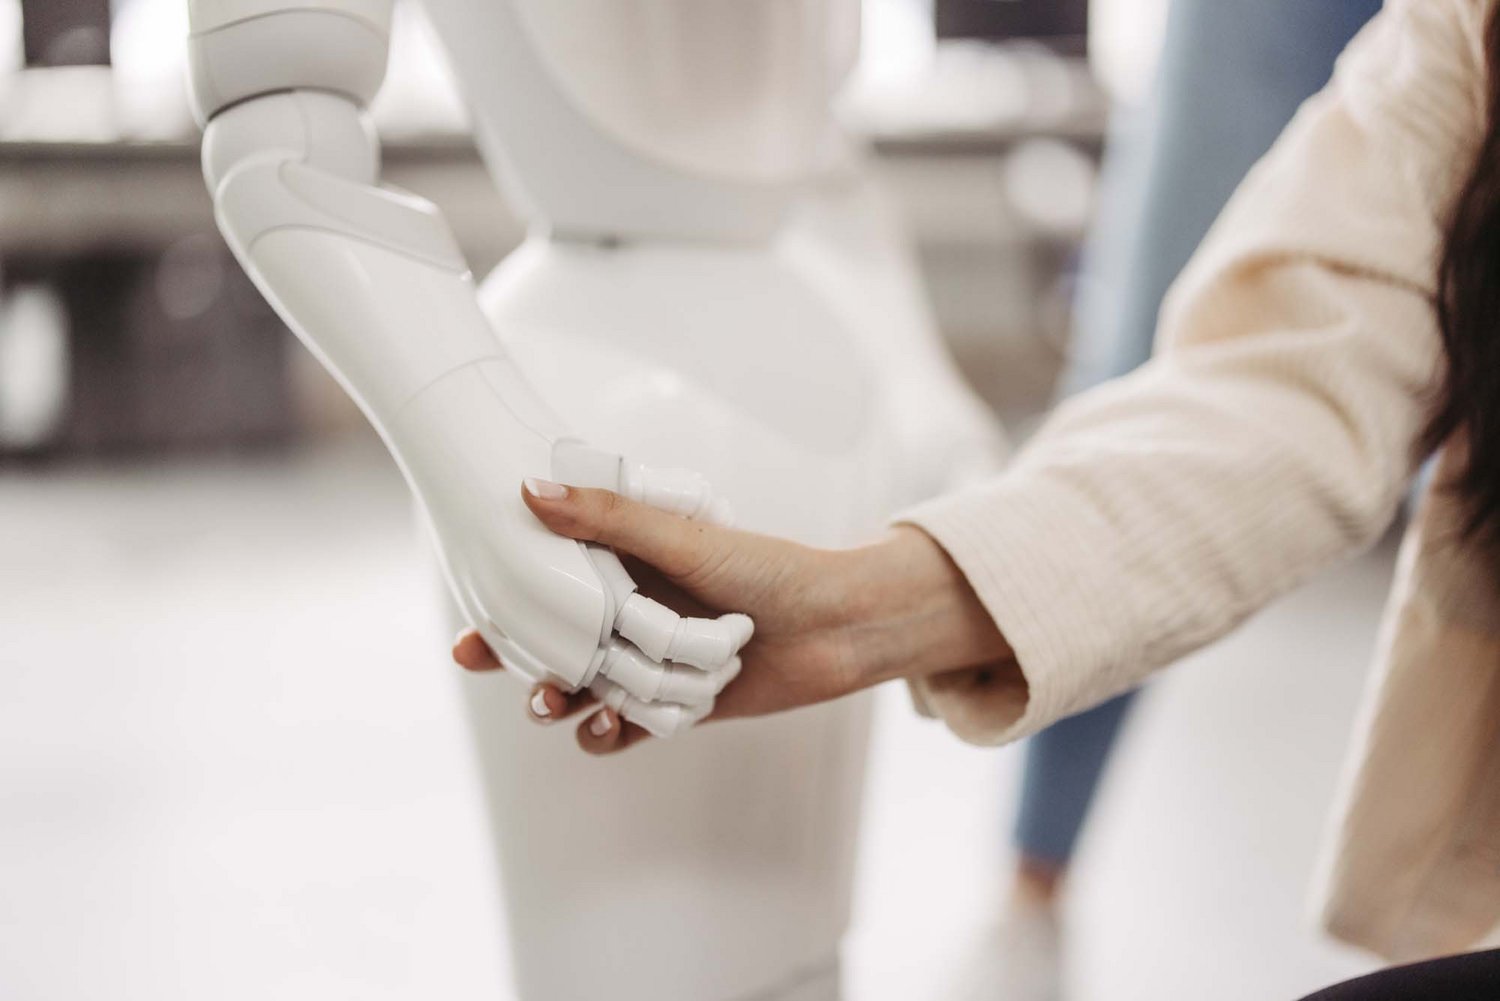 Man sieht eine Roboterhand, die die Hand einer Person hält.